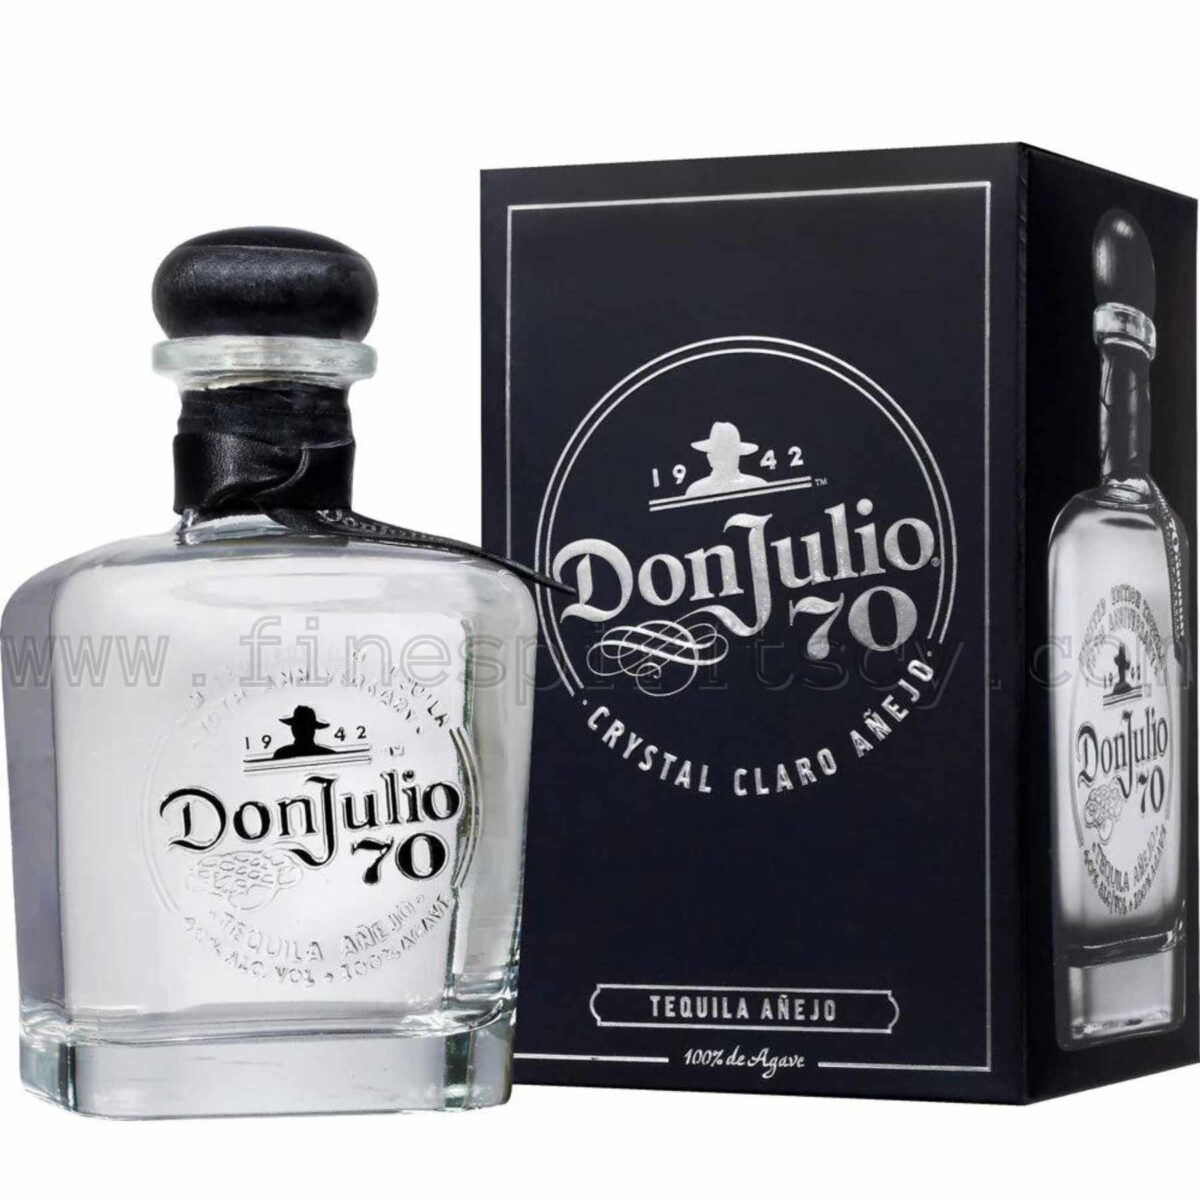 Don Julio 70 Cristalino Anejo Tequila